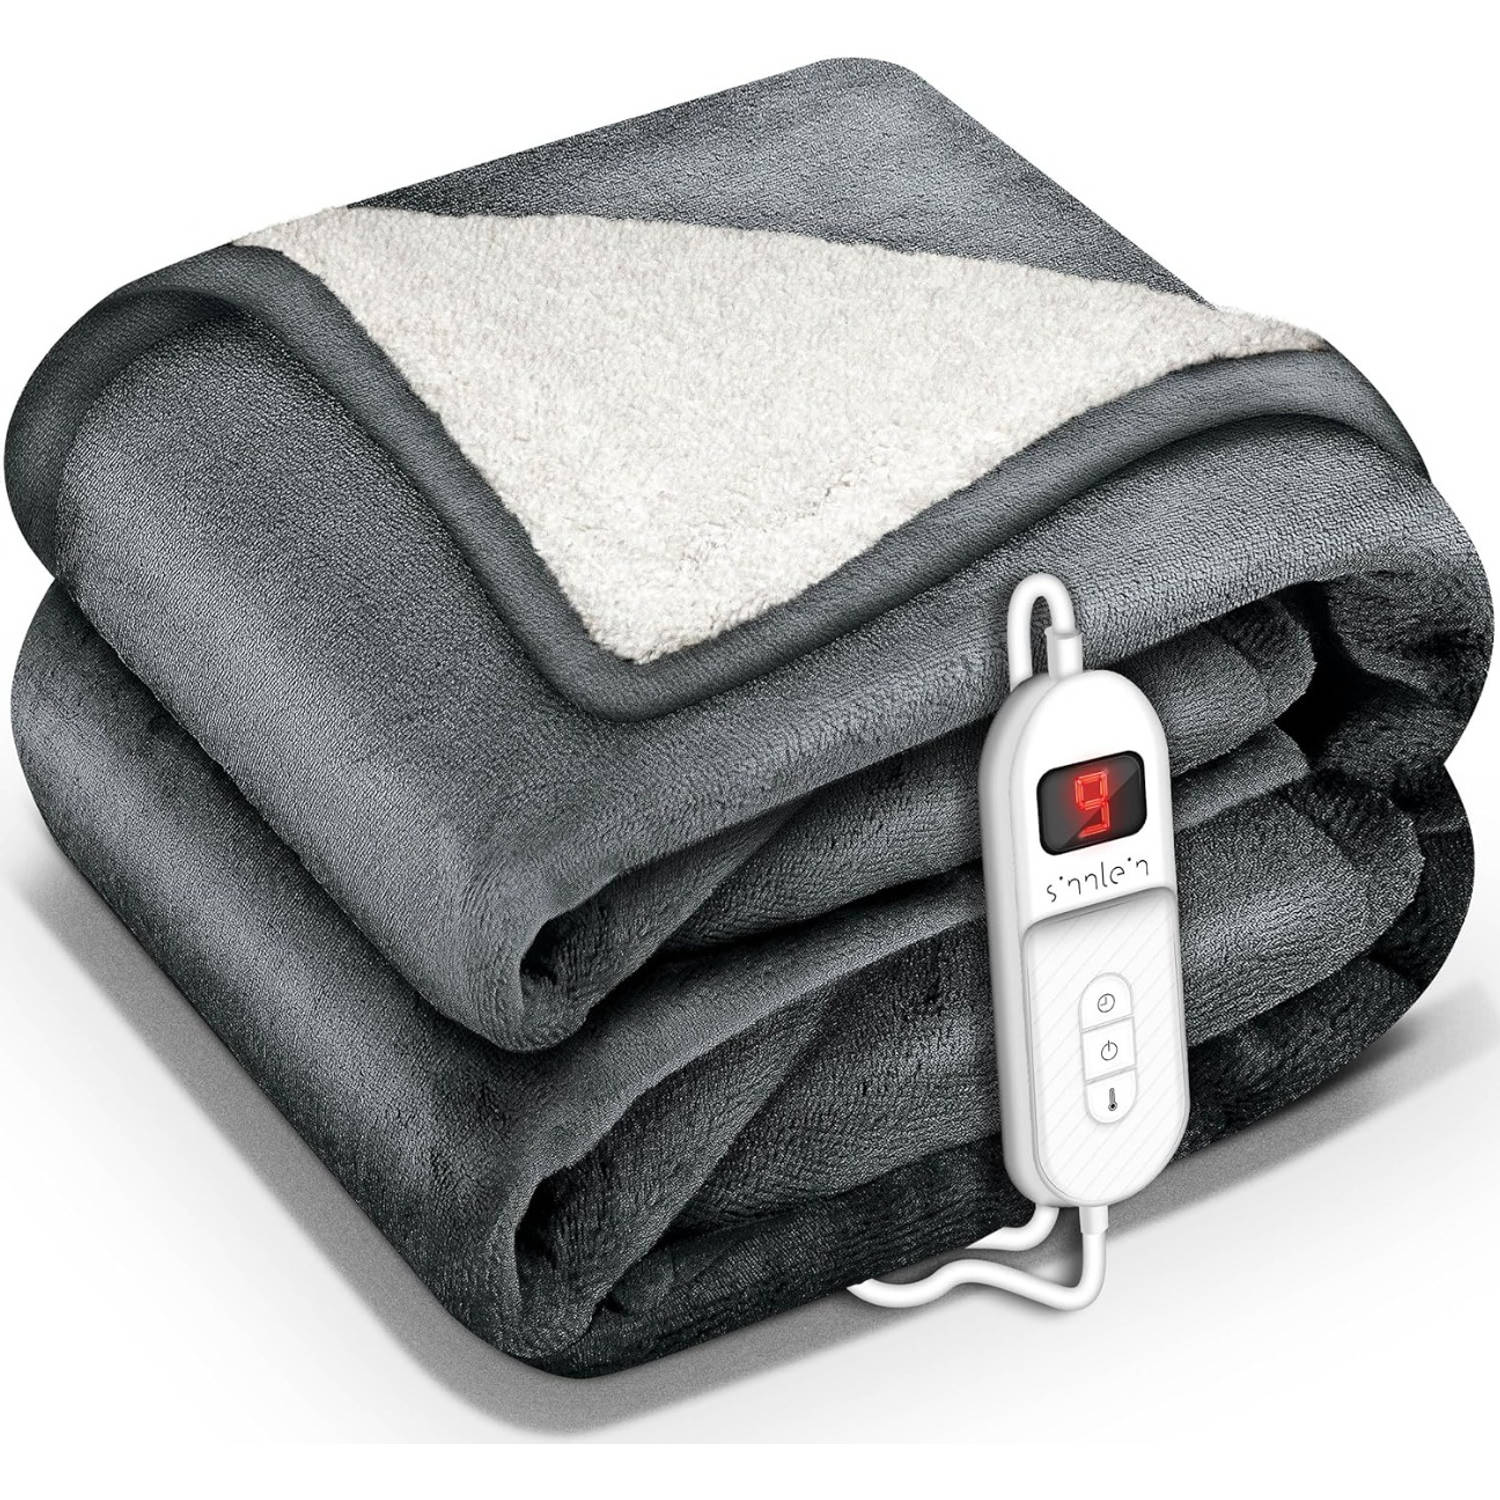 Sinnlein- Elektrische deken met automatische uitschakeling, donkergrijs, 200 x 180 cm, warmtedeken m